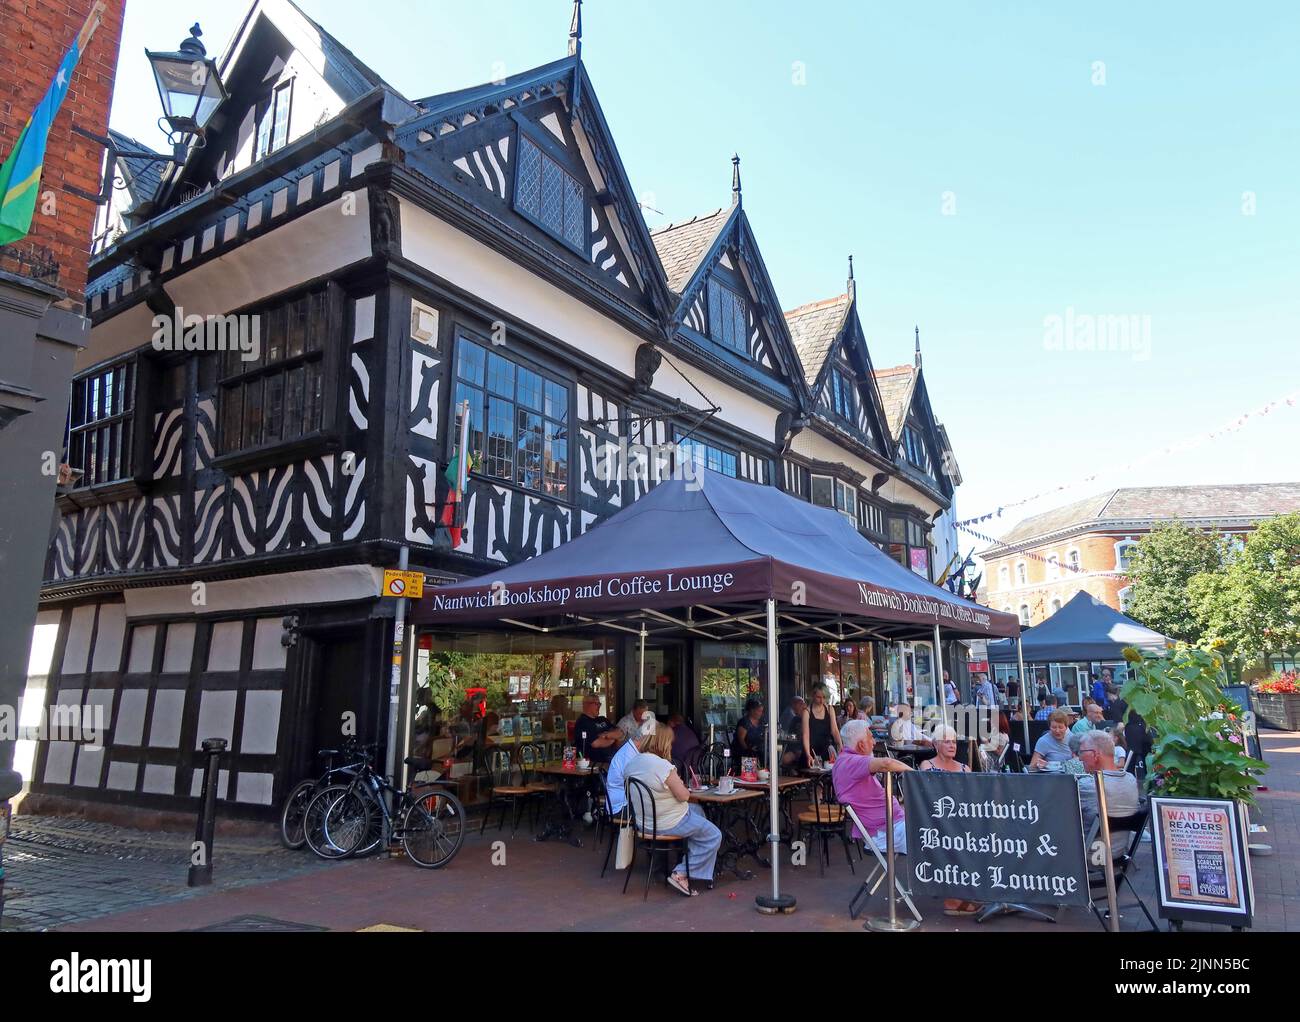 Schwarz & Weiß, traditionelles Tudor Timber-Gebäude, Nantwich Bookshop und Coffee Lounge, 46 High St, Nantwich, Cheshire, England, CW5 5AS Stockfoto